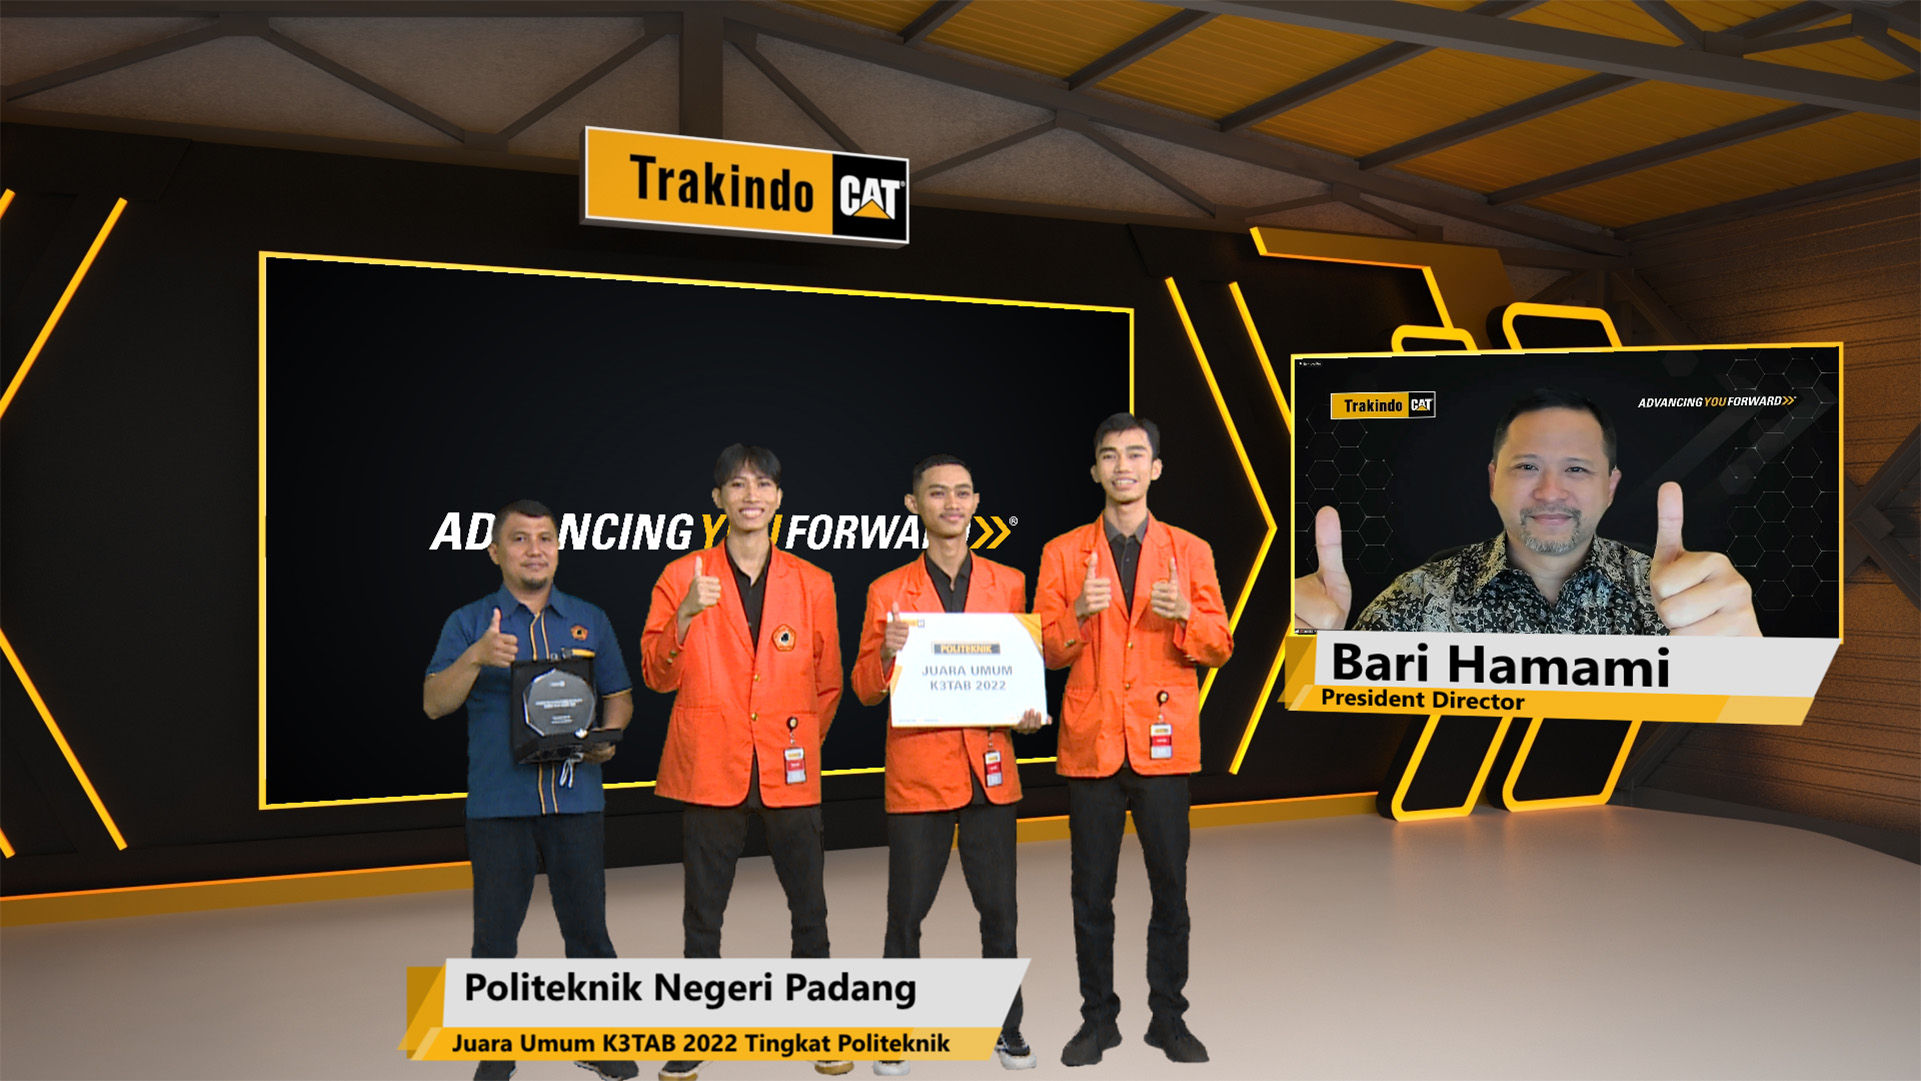 Juara Umum K3TAB 2022 tingkat Politeknik yang berhasil diraih Politeknik Negeri Padang bersama Bari Hamami, President Director Trakindo